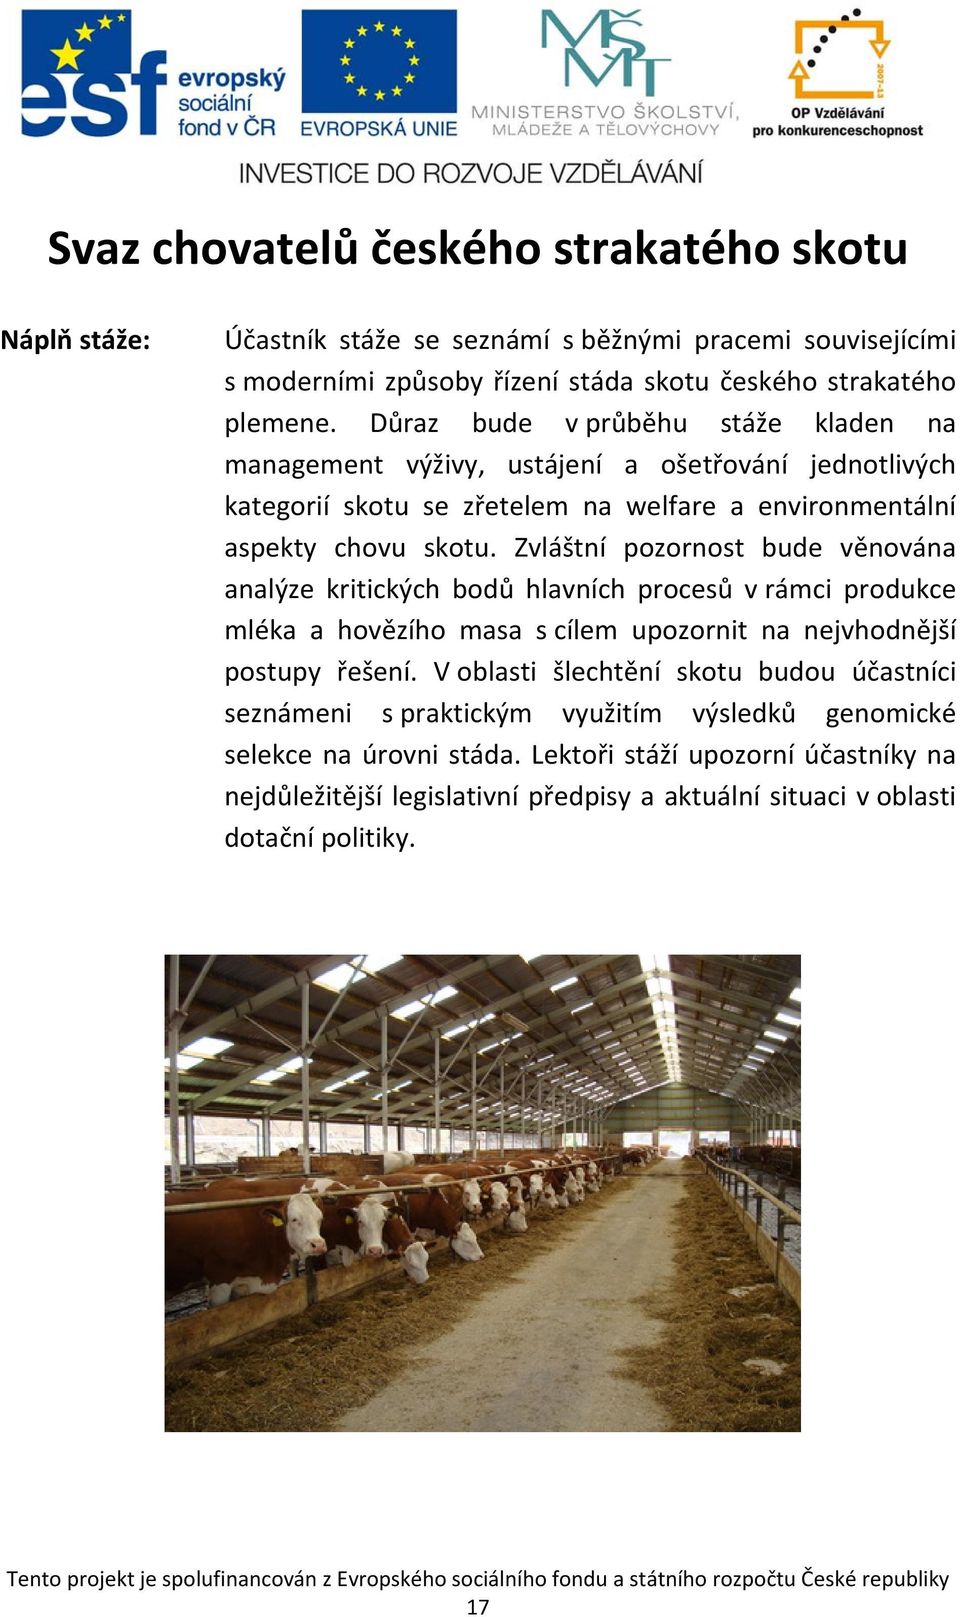 Zvláštní pozornost bude věnována analýze kritických bodů hlavních procesů v rámci produkce mléka a hovězího masa s cílem upozornit na nejvhodnější postupy řešení.